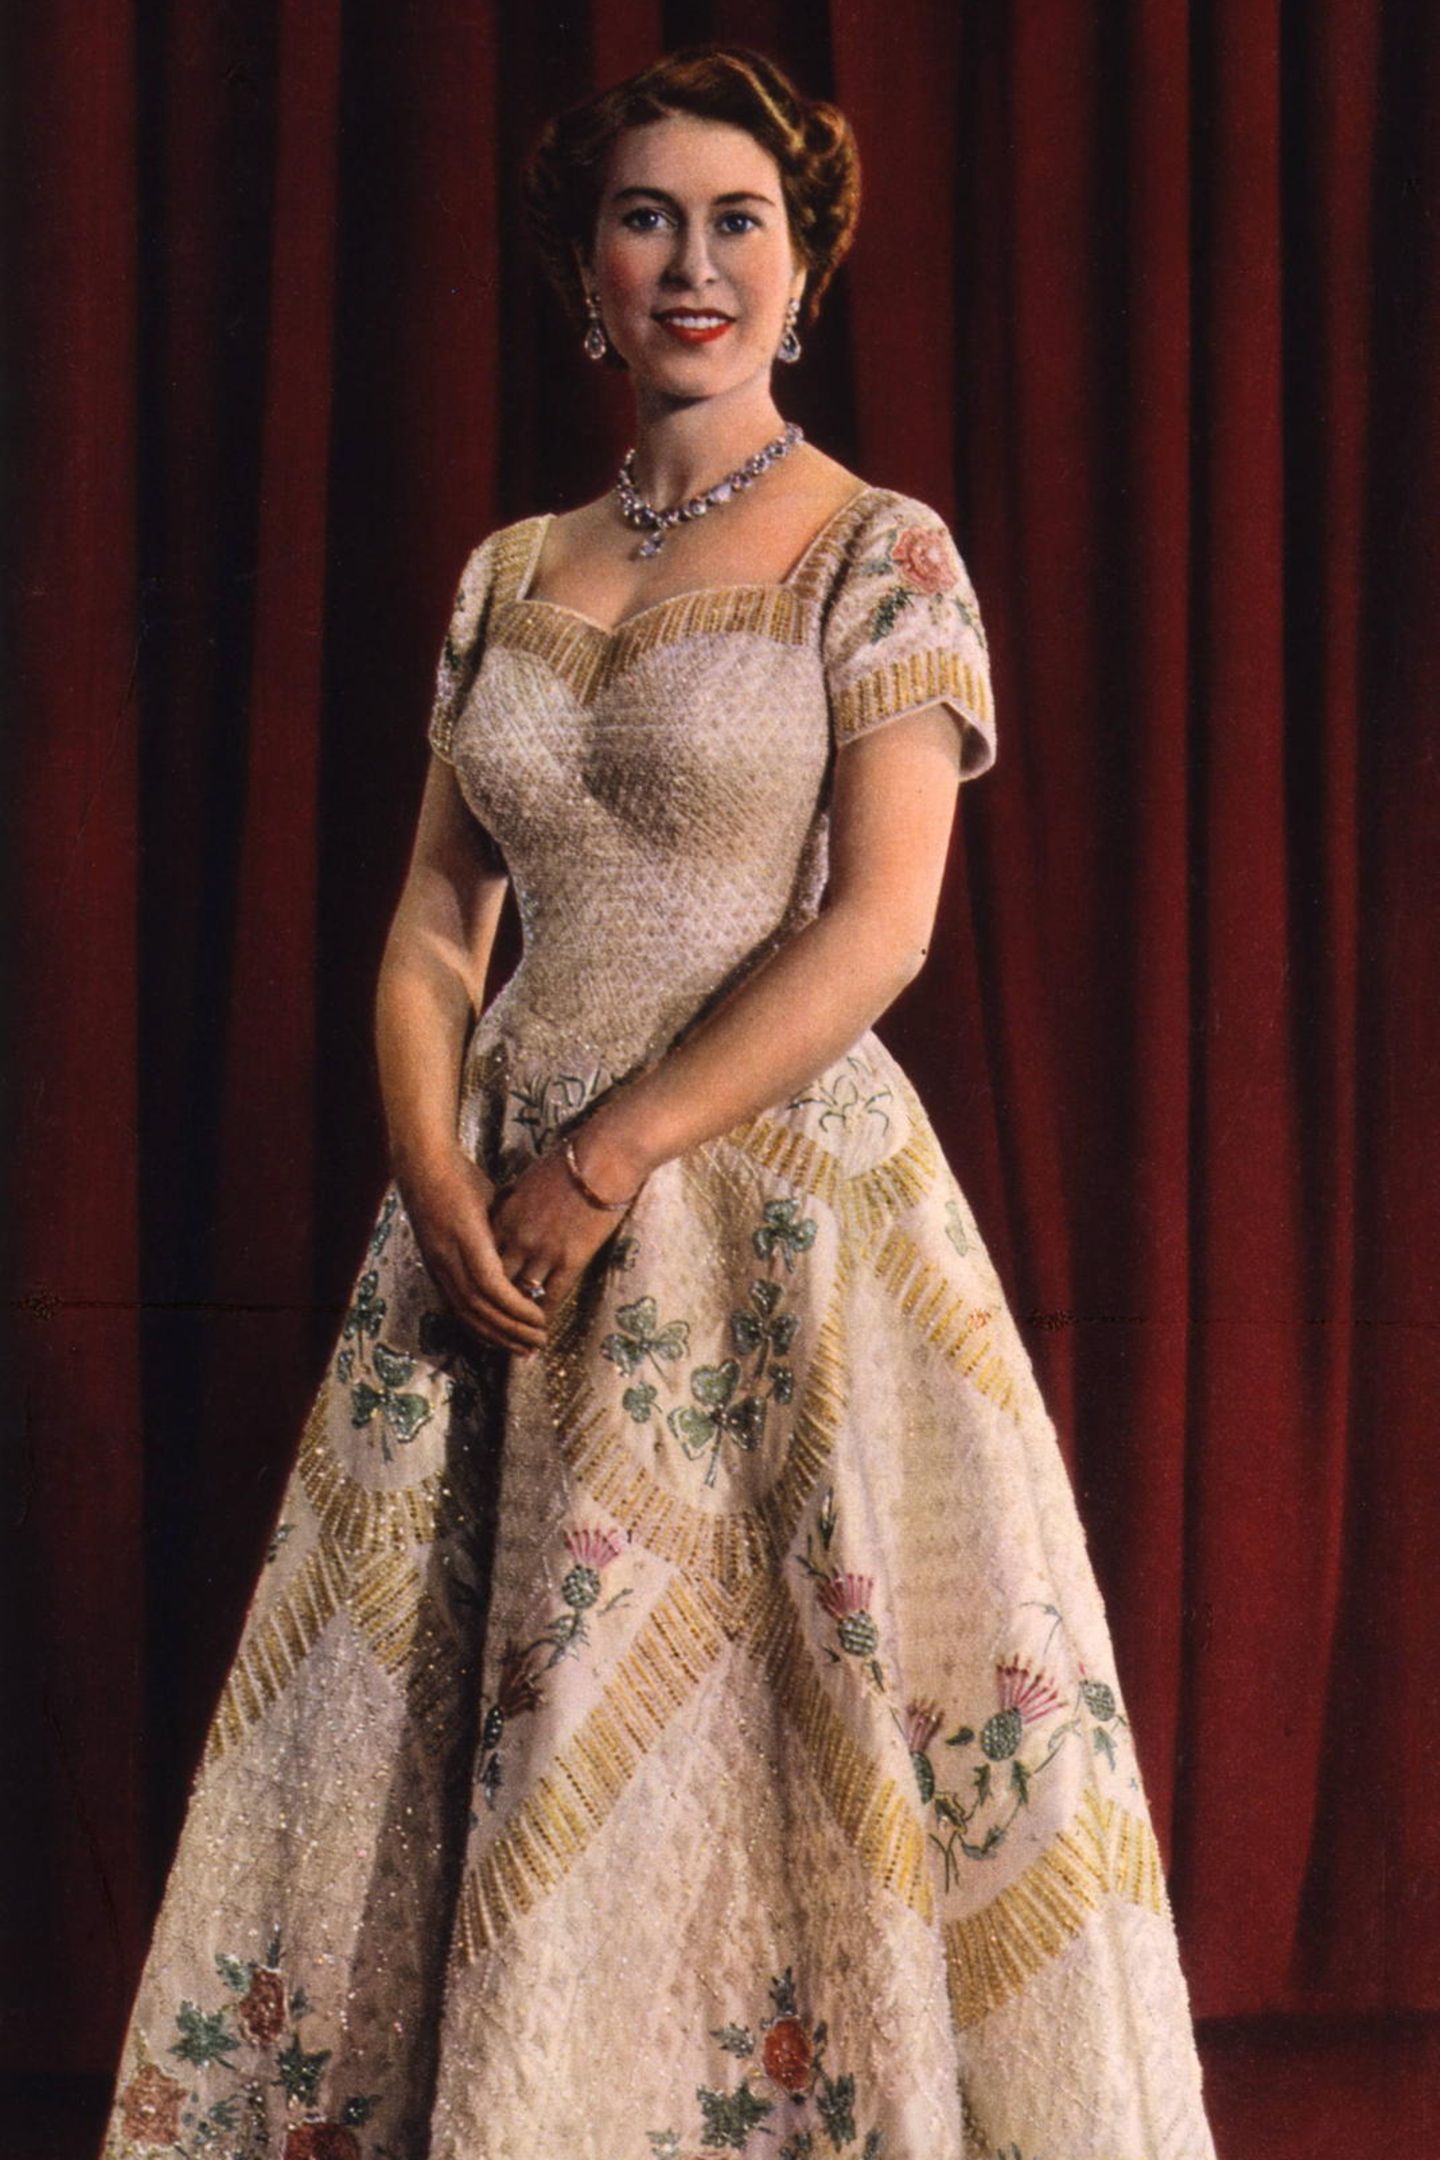 Ein bedeutender Moment für die Queen: Im Jahr 1953 wird sie zur Queen von England gekrönt und trägt dabei genau wie ihre digitale Puppe ein opulentes Kleid mit aufwendiger Stickerei. 